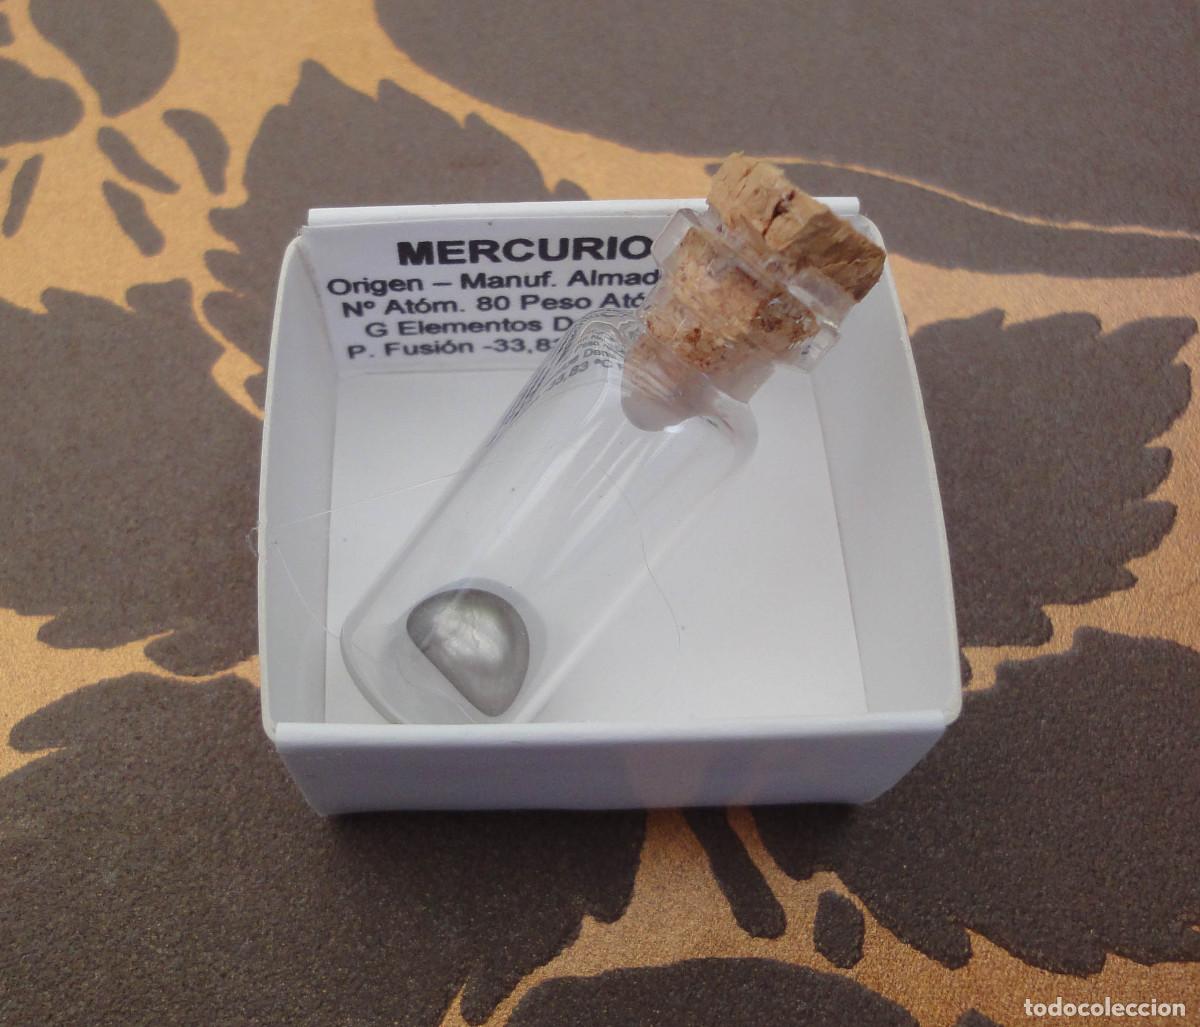 mercurio liquido - 1,3 kl (con recipiente) - Compra venta en todocoleccion